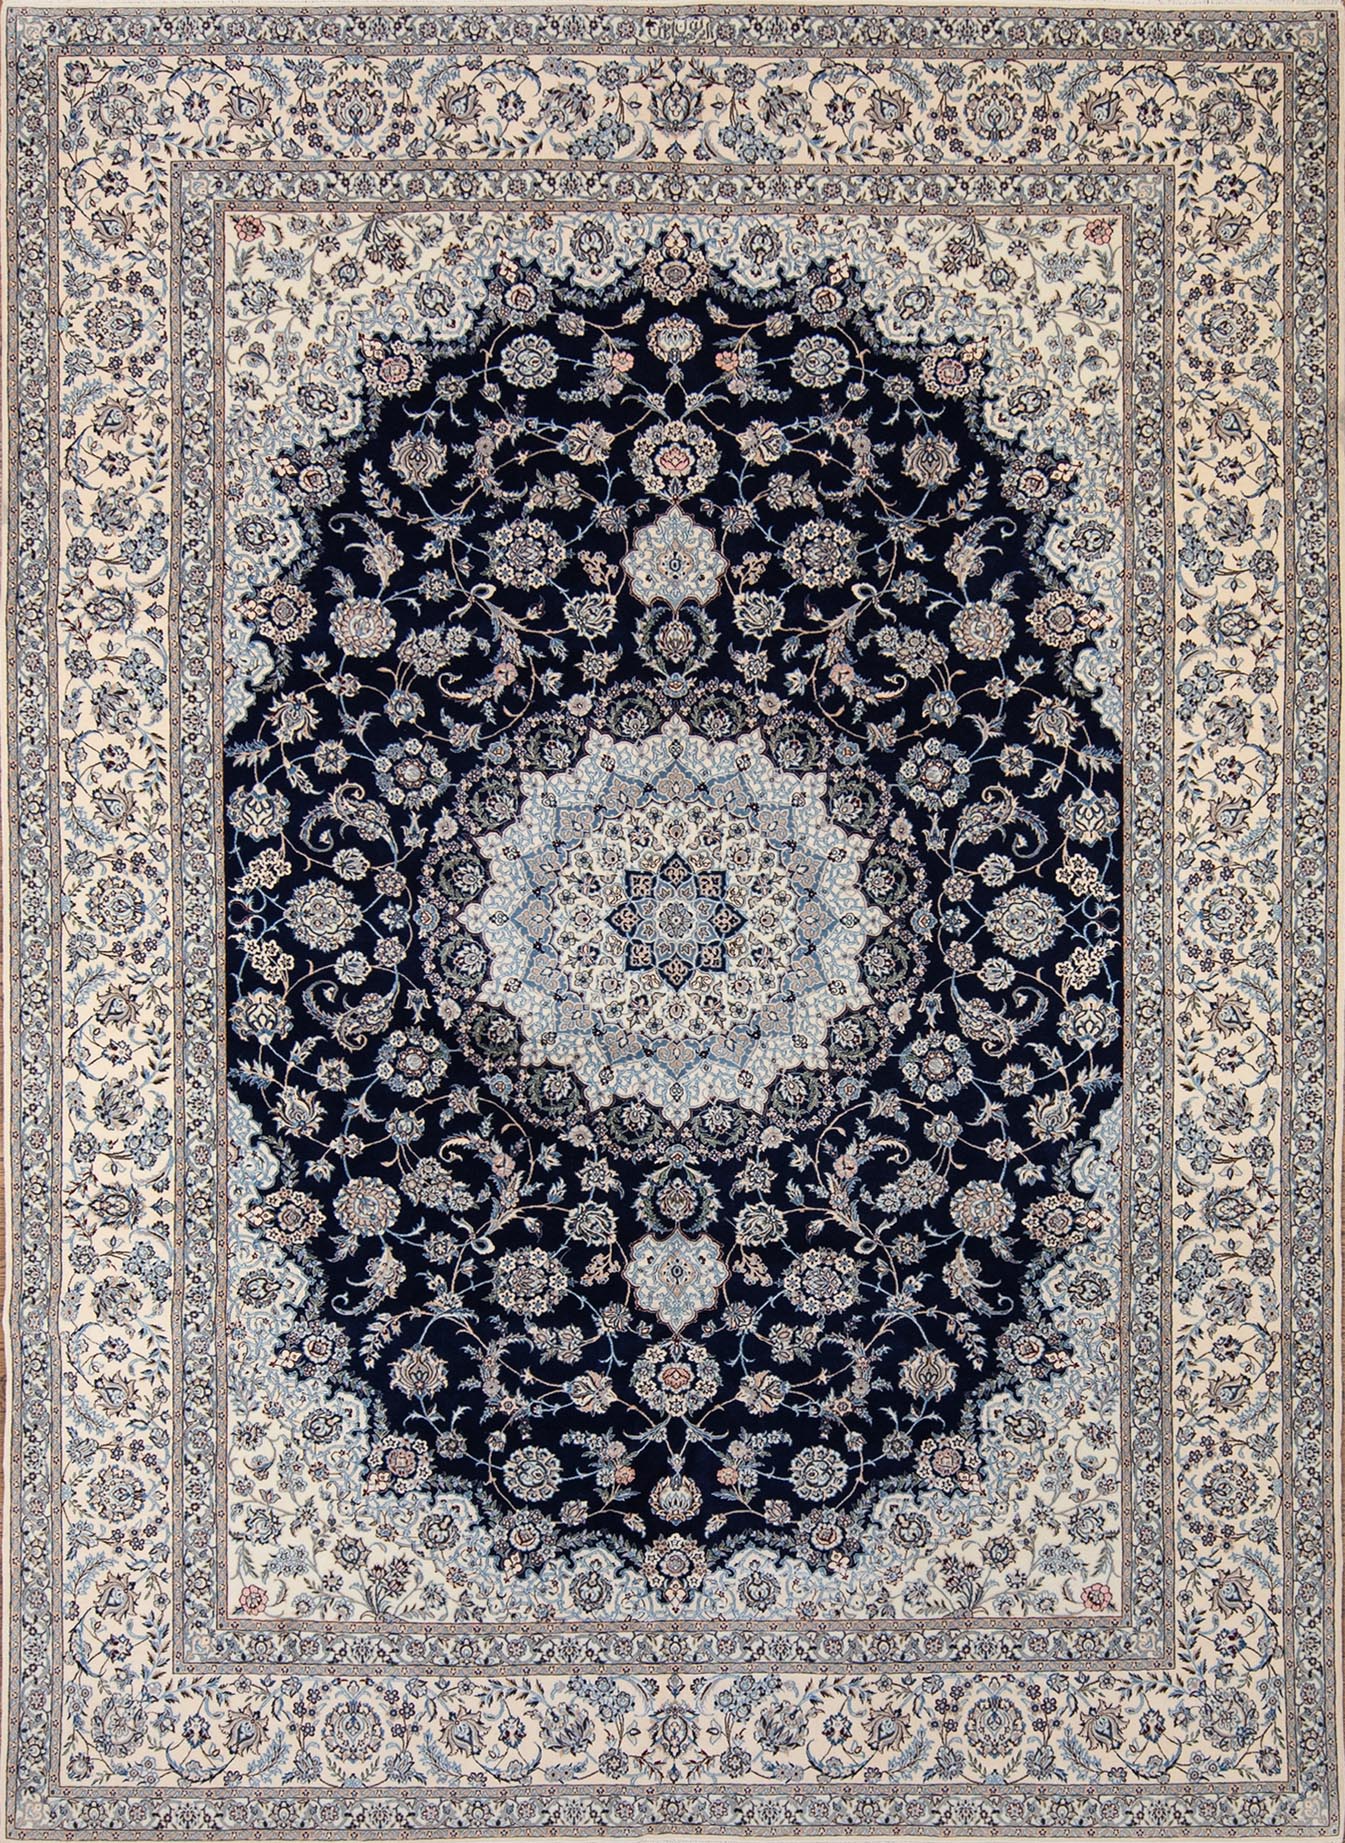 Persian navy blue rug made of wool and silk, handmade Persian Nain rug. Size 8.4x11.5.